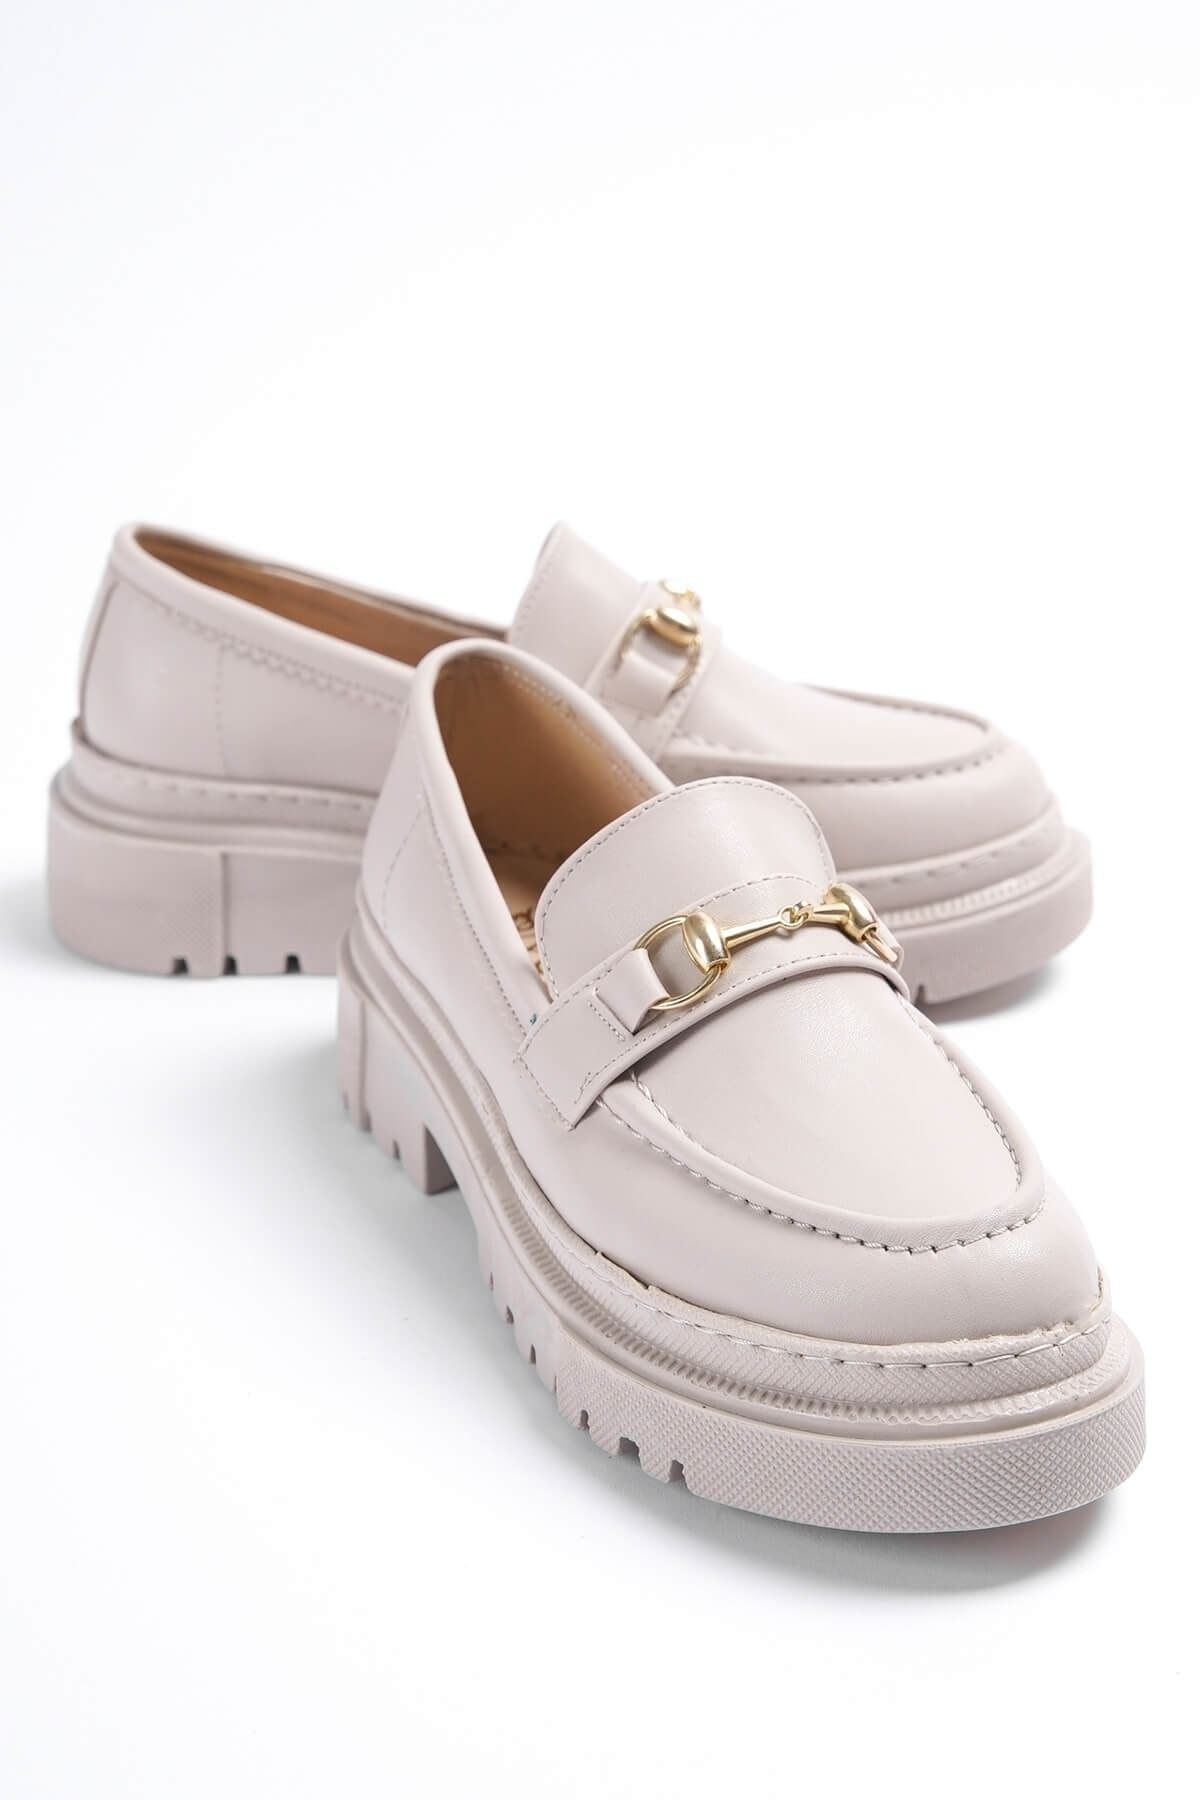 DİVOLYA Ferrera Bej Gold Tokalı Deri Günlük Kullanım Loafer Kadın Ayakkabı